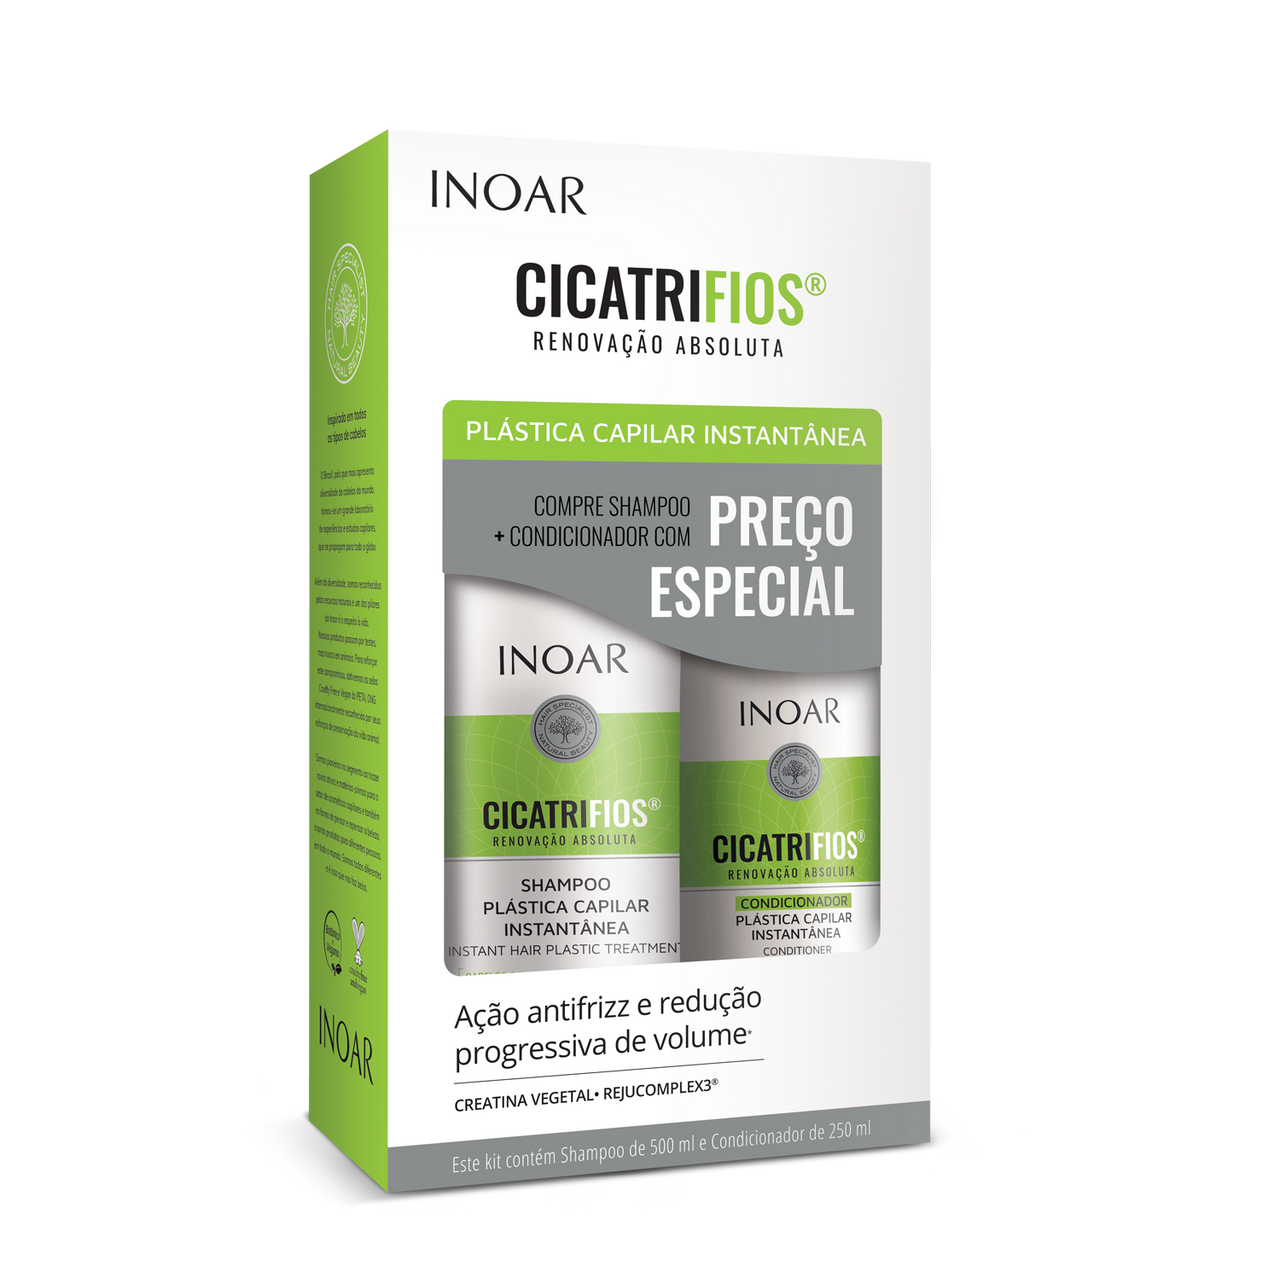 INOAR CicatriFios Duo Kit - šampūnas ir kondicionierius atkuriantis plauko struktūrą 500 ml + 250 ml